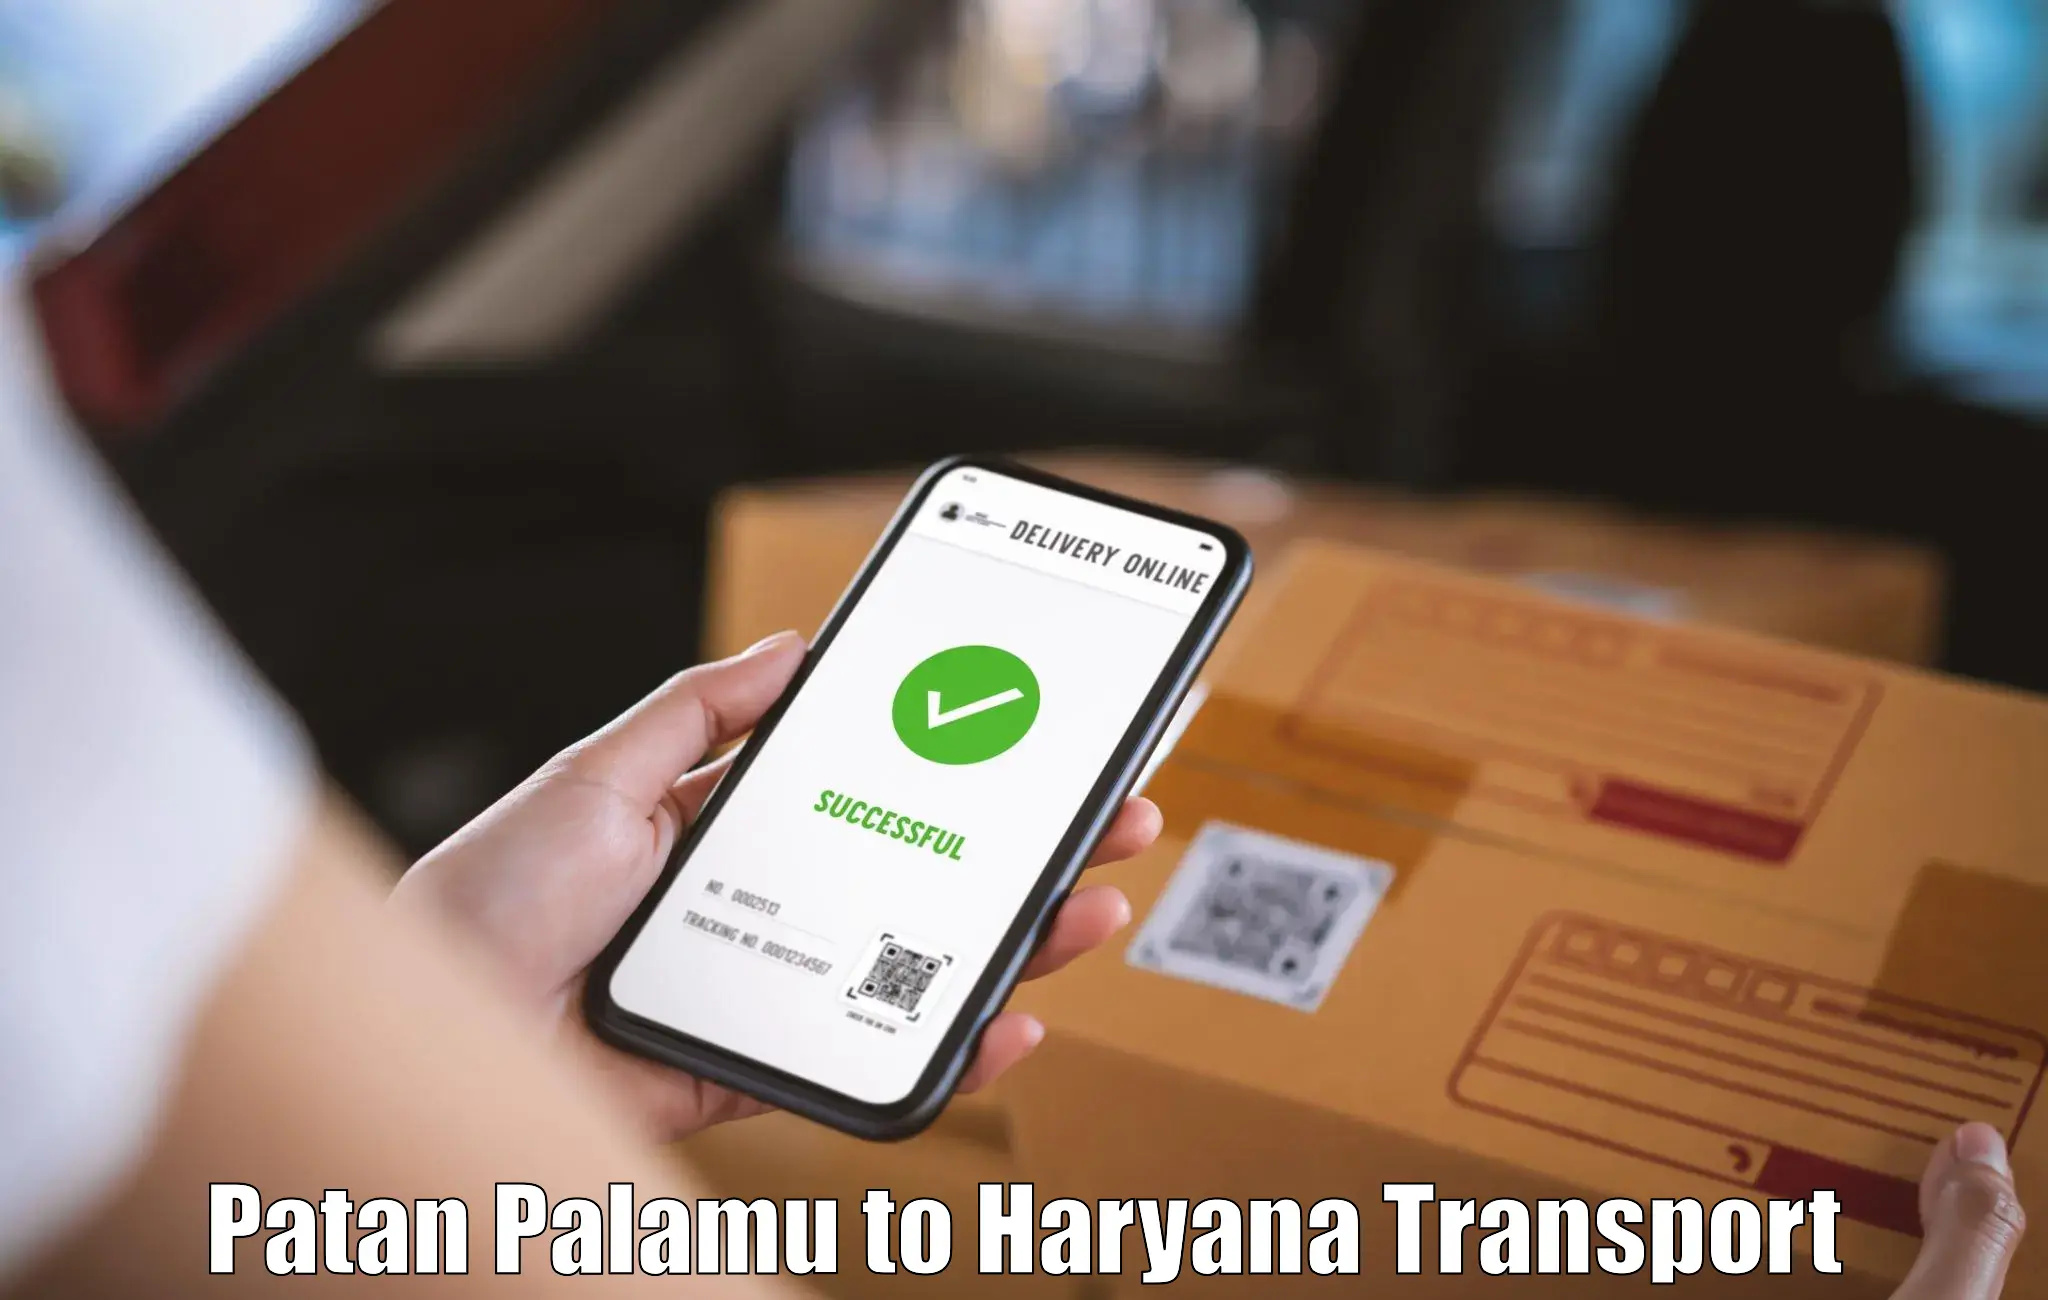 Shipping partner Patan Palamu to Odhan